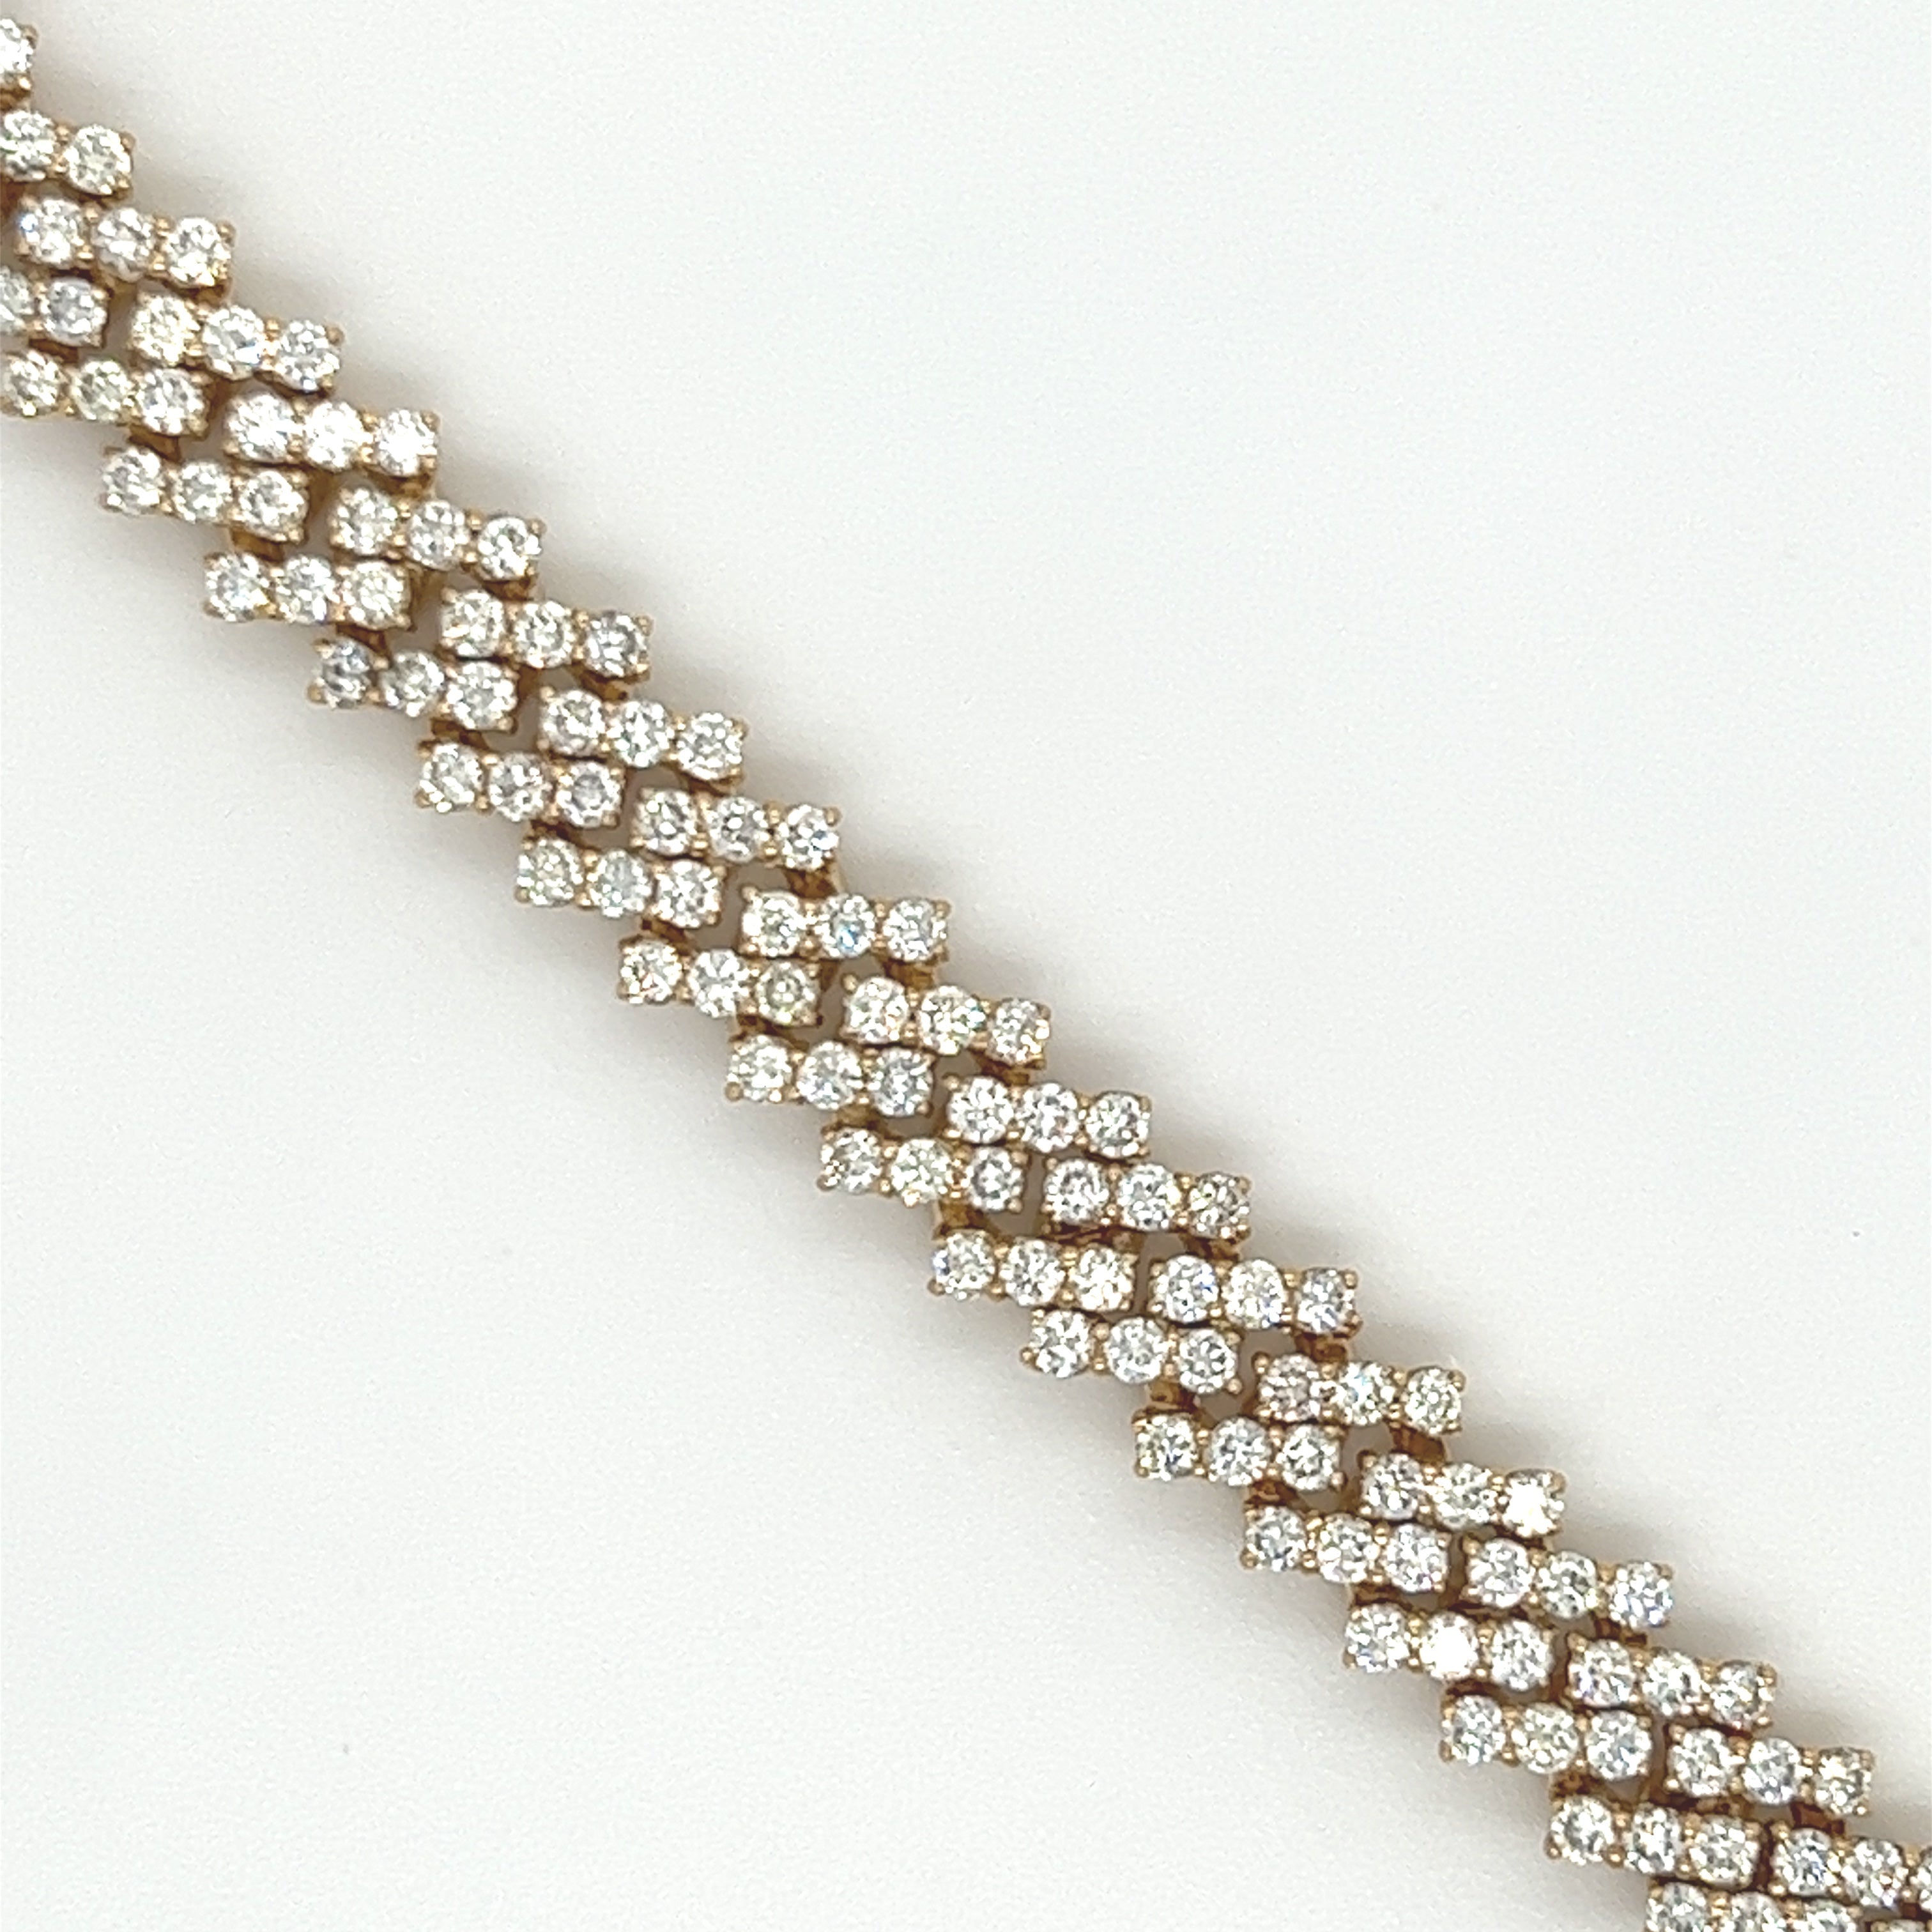 7.25CT. Diamond  Bracelet in 10K Gold - White Carat - USA & Canada